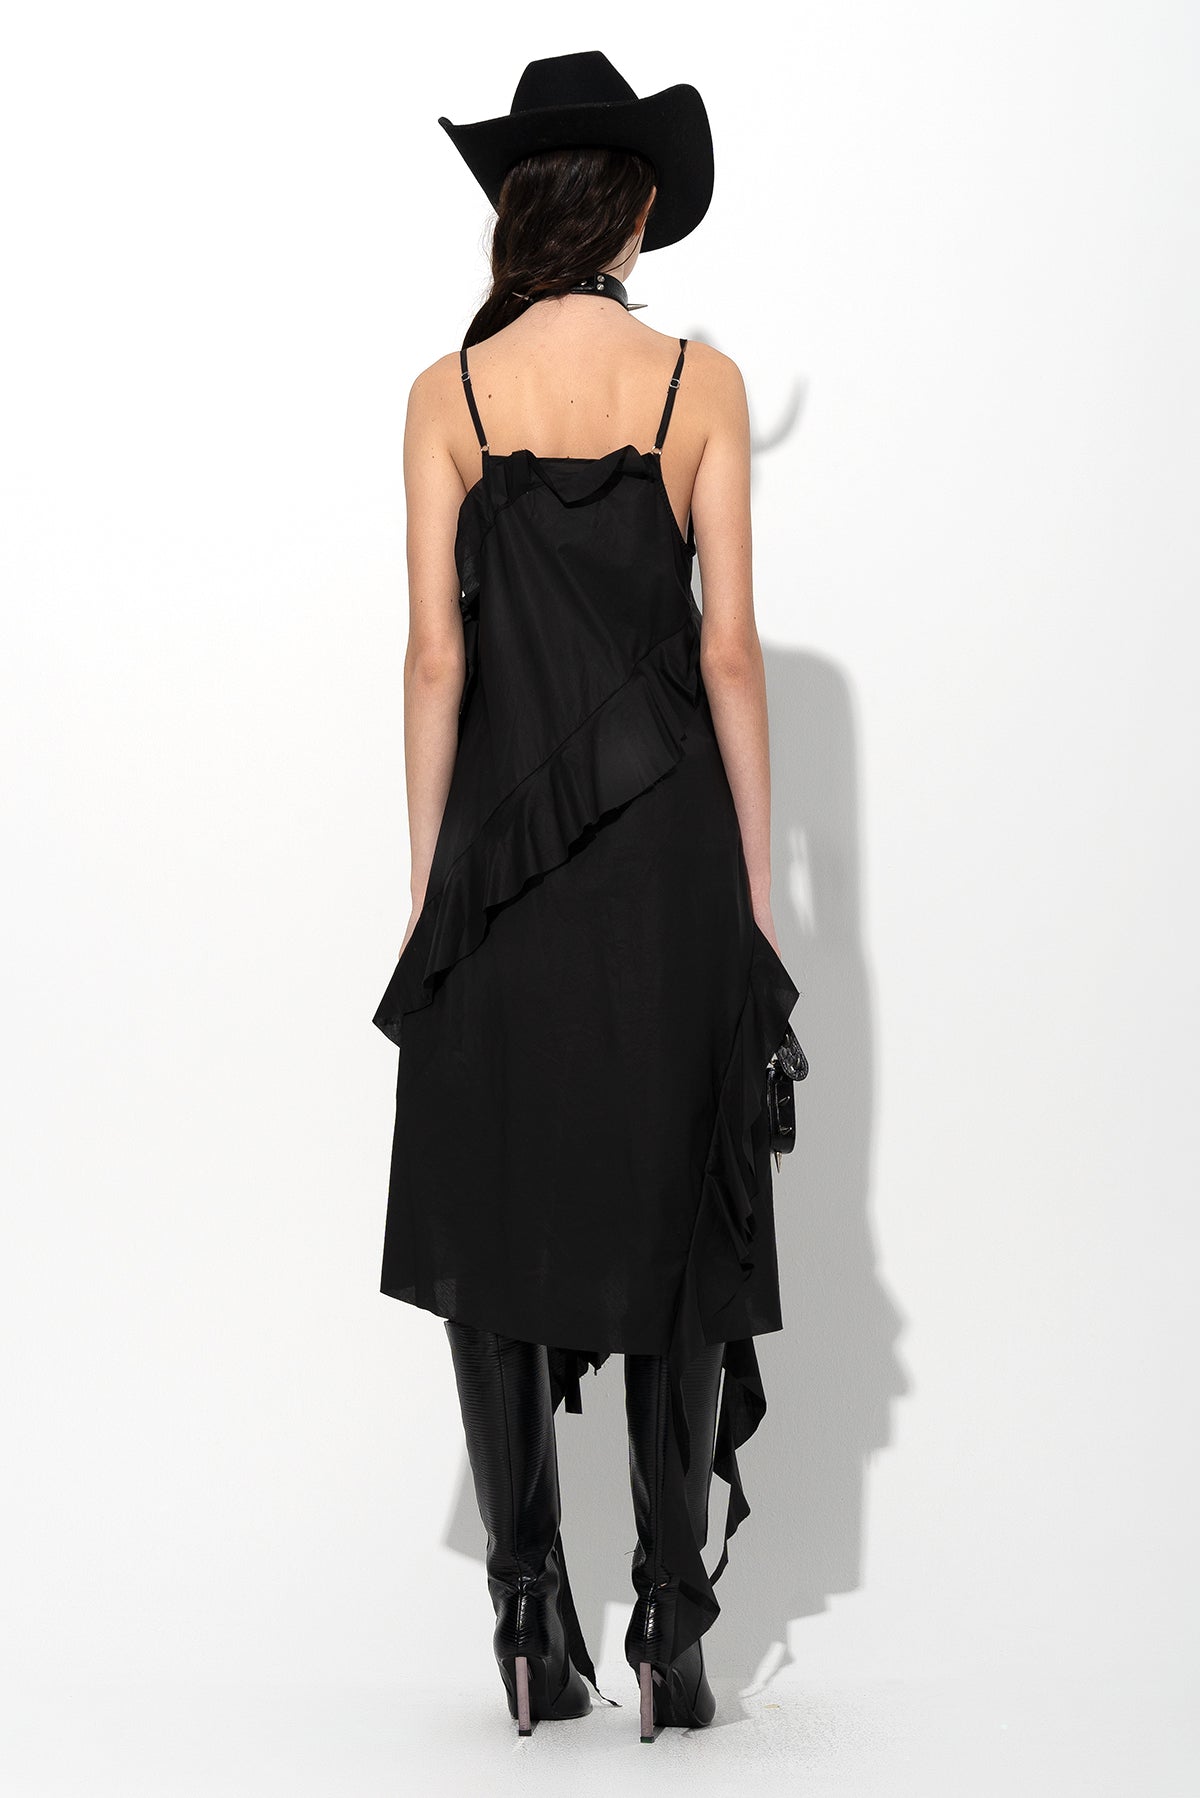 BLACK STRAP DRESS WITH ASYMMETRIC CASCADING FRILLS marques almeida